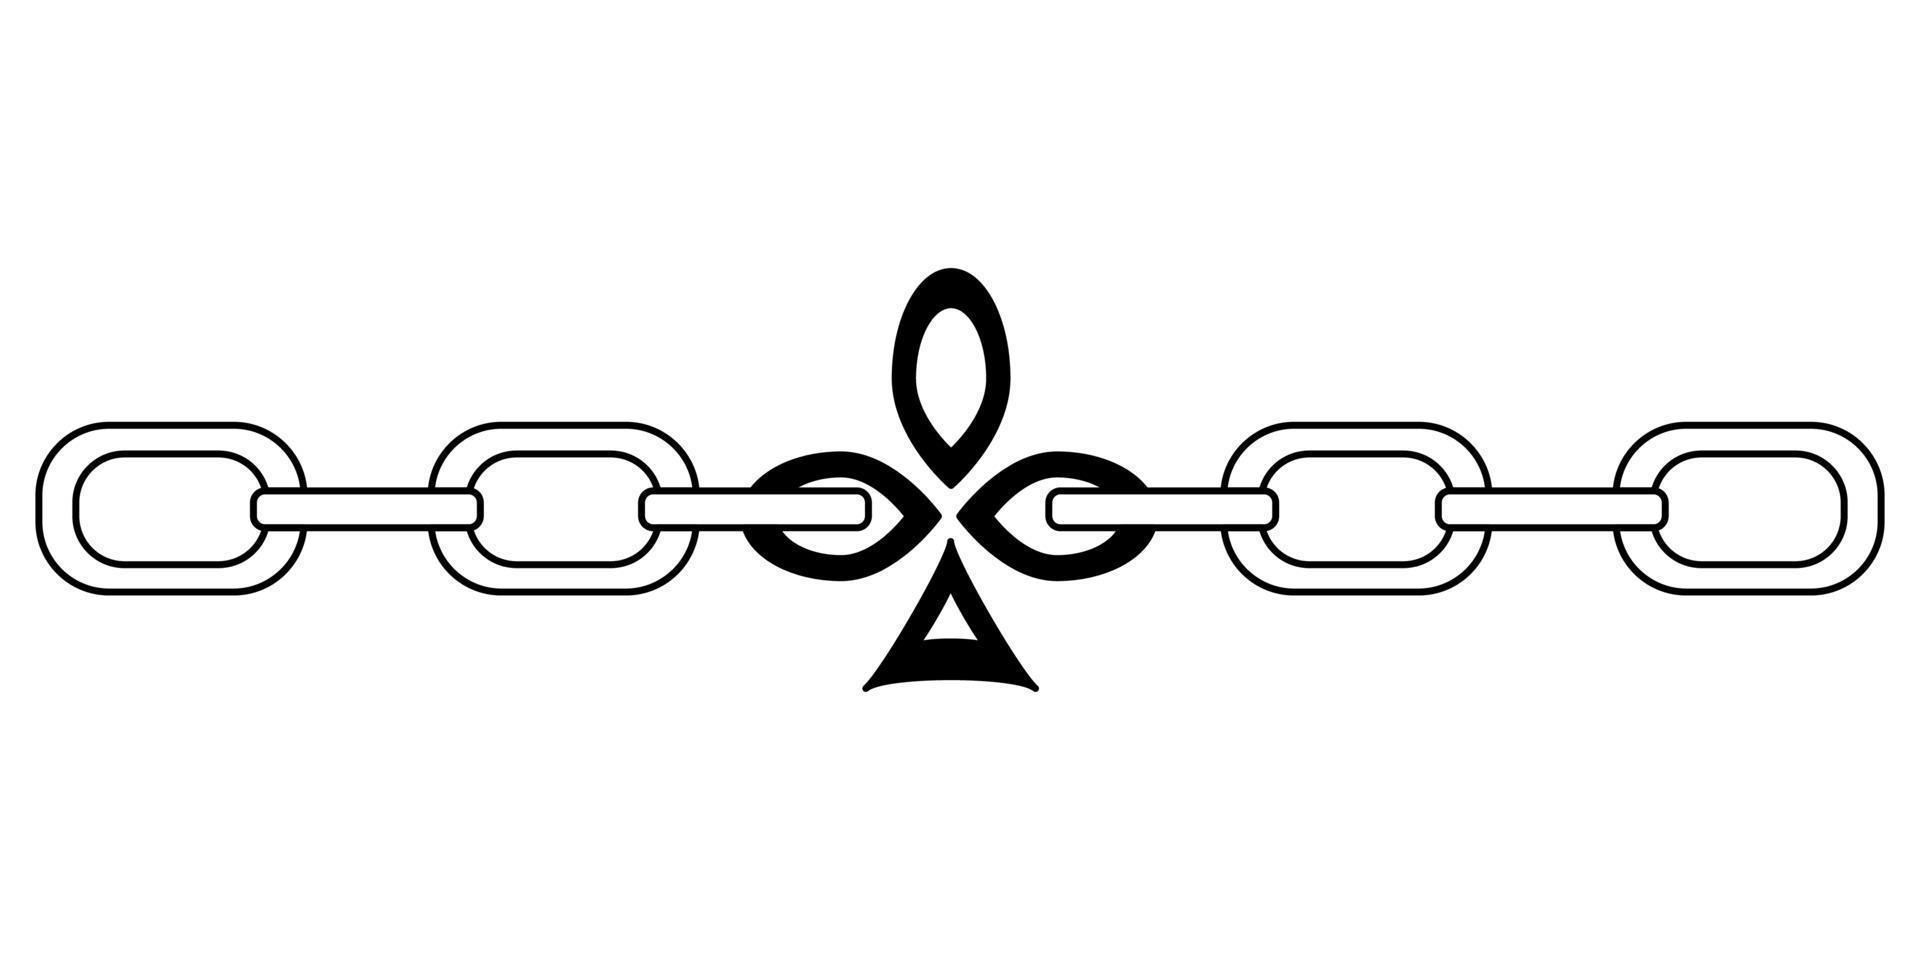 traje de tarjeta de espadas de clubes de cadena de tatuaje al estilo de los años 90, 2000. ilustración de un solo objeto en blanco y negro. vector